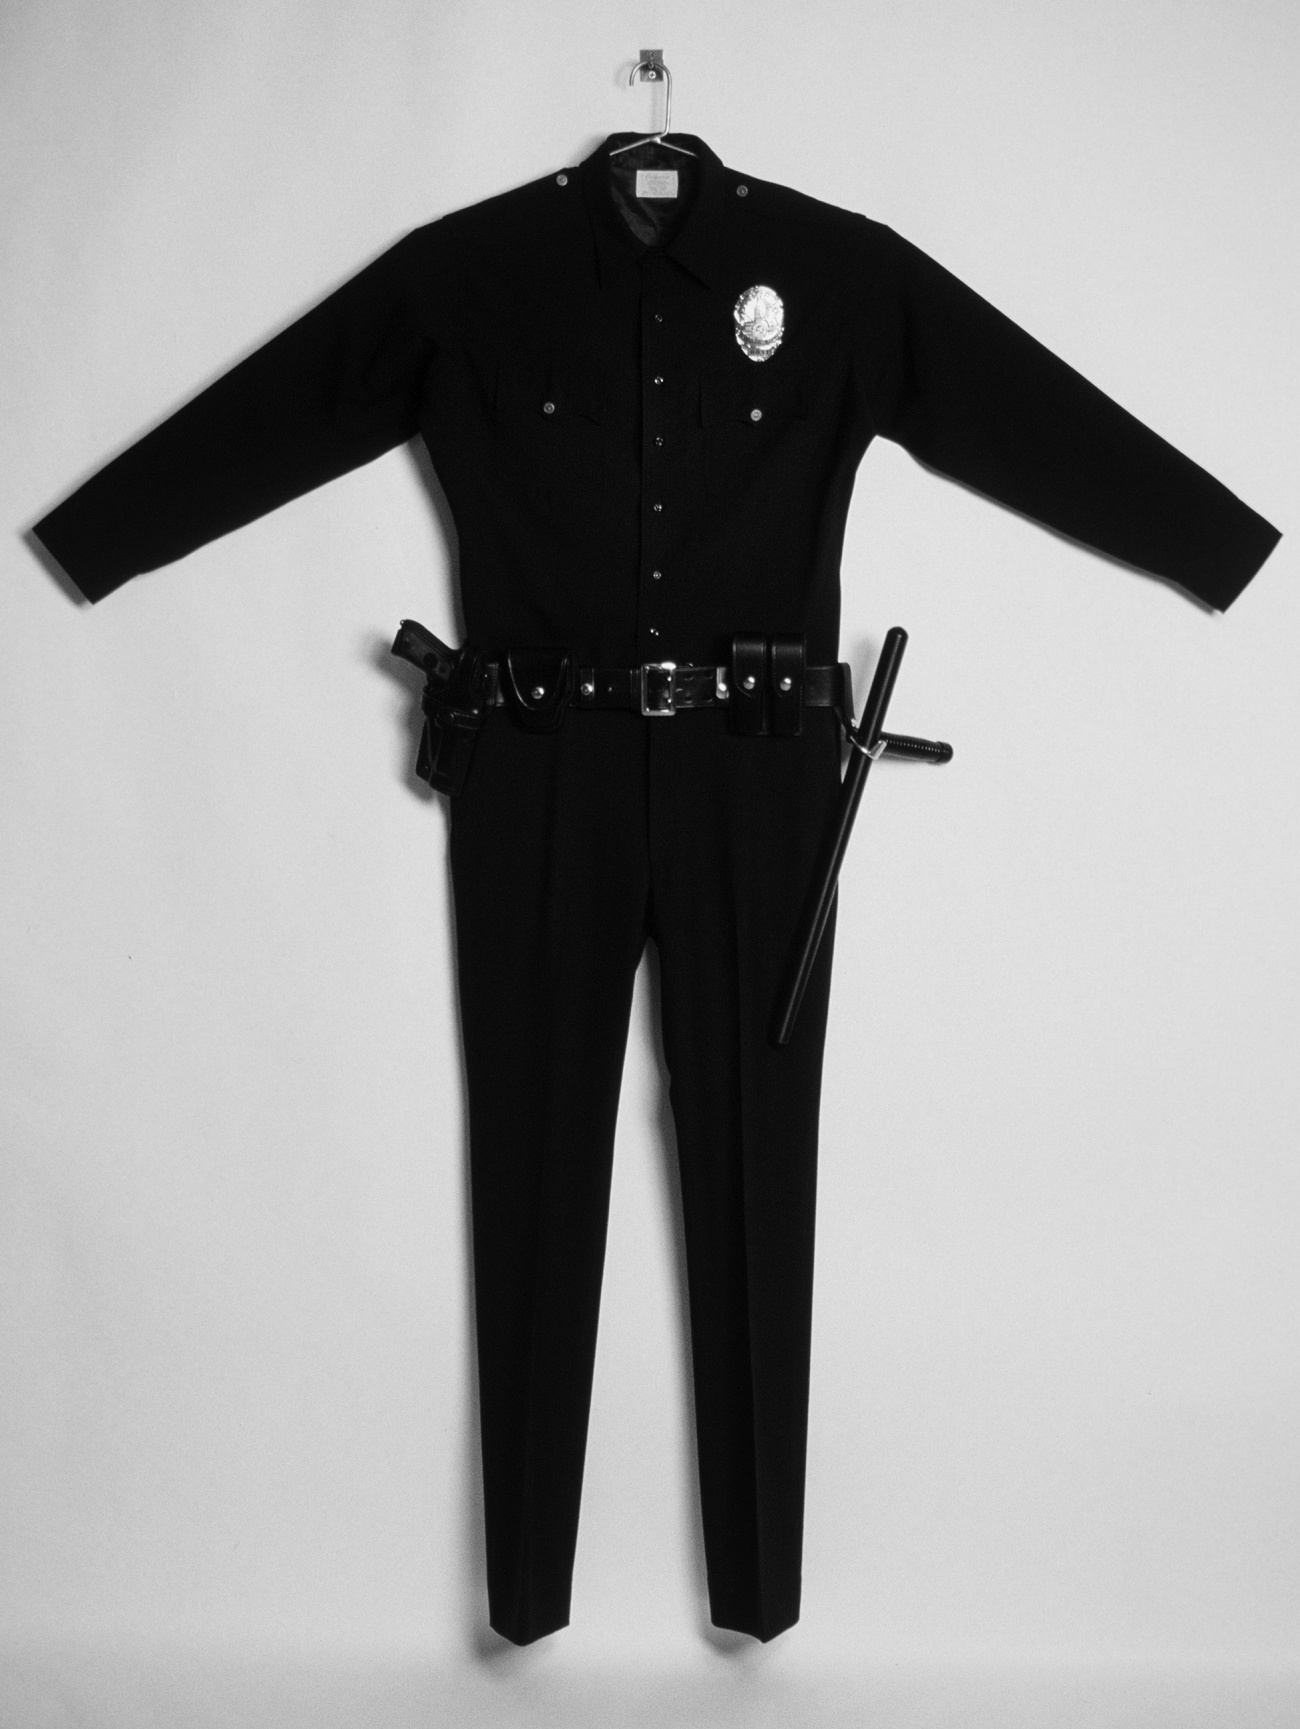 lapd police uniform